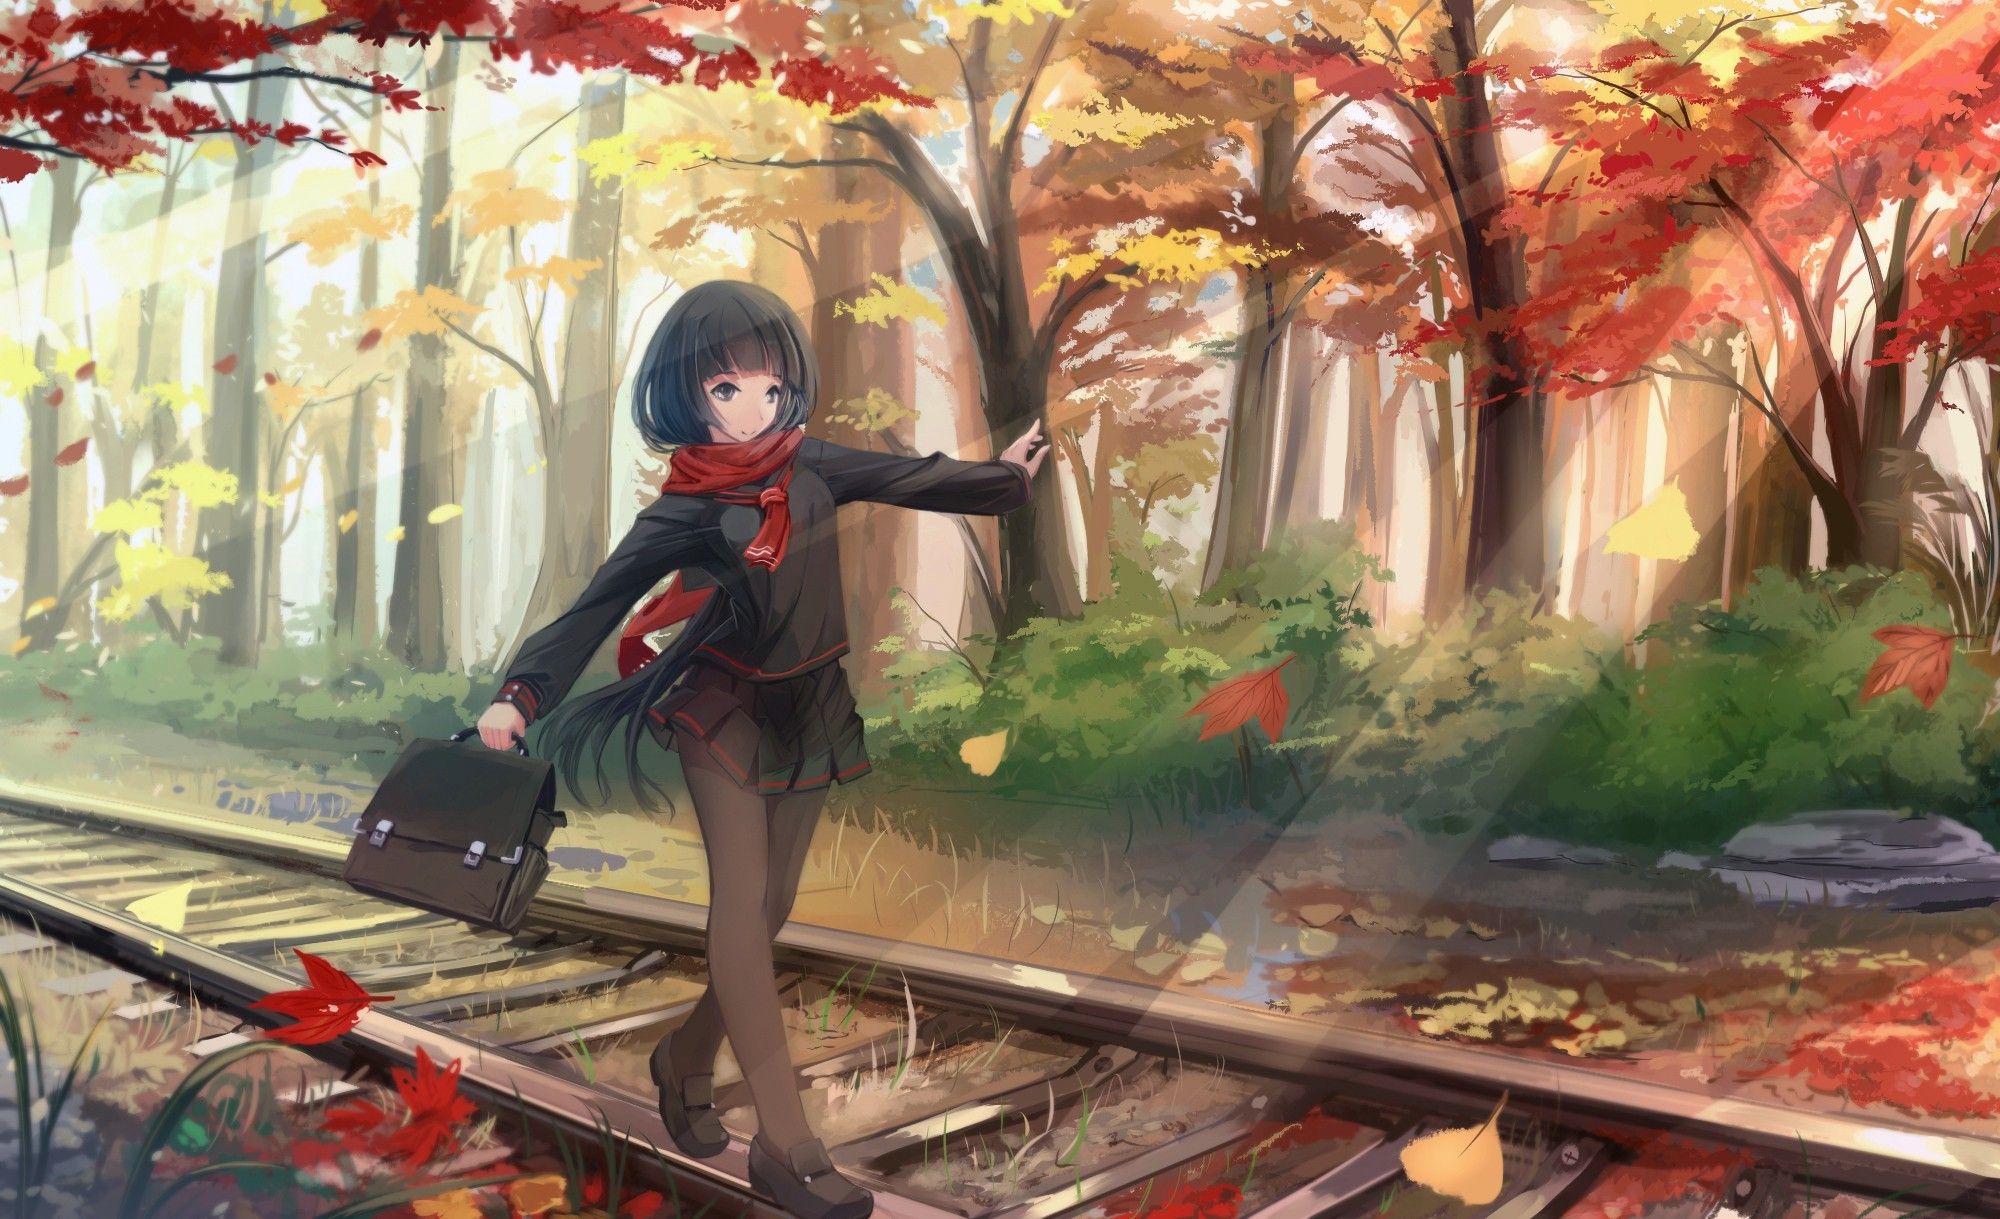 Wallpaper ID: 130370 / anime, Lifeline, anime girls, fall, trees, fantasy  girl Wallpaper